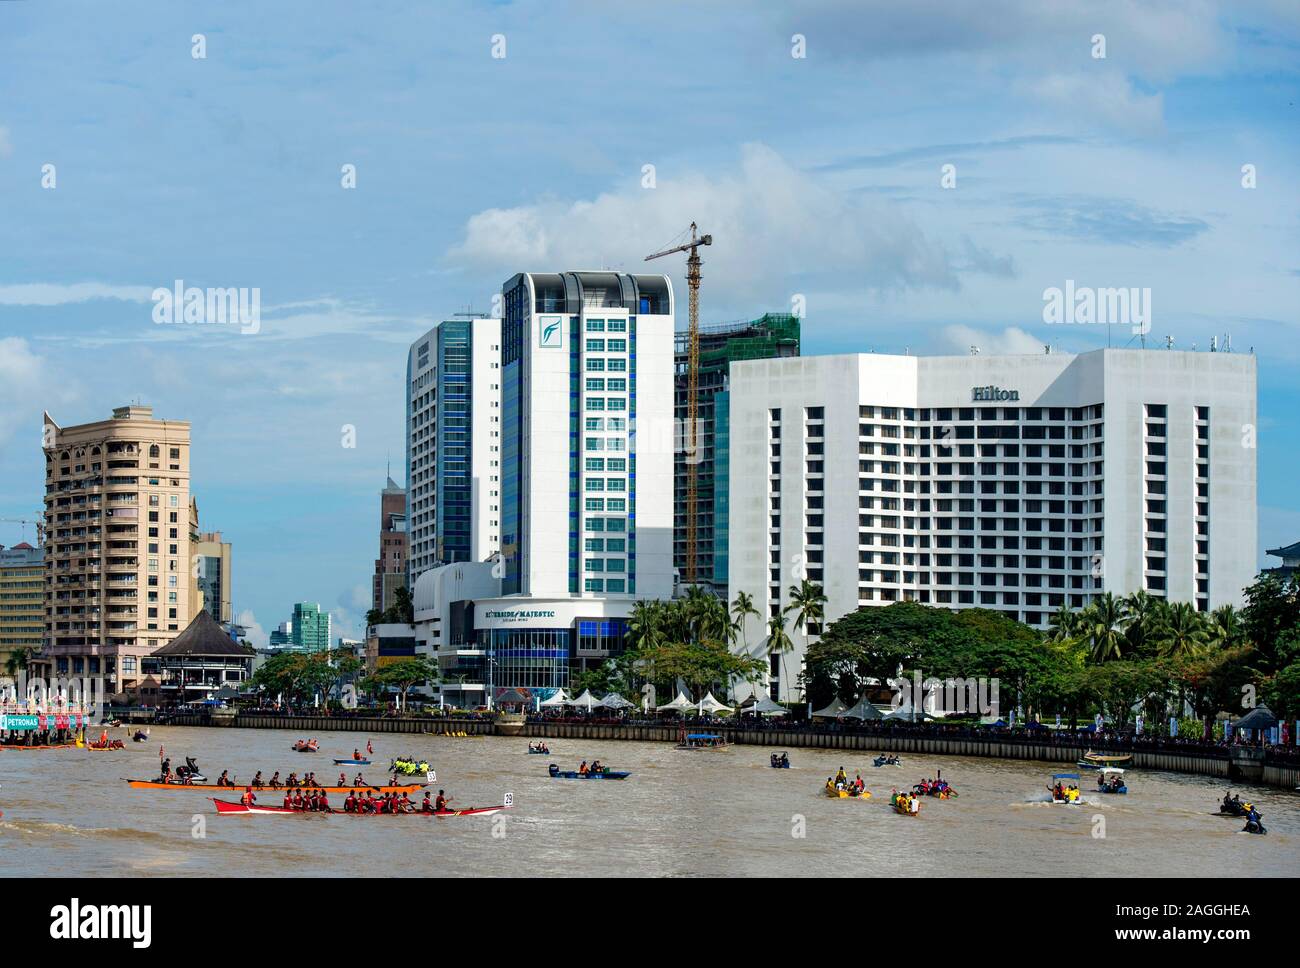 L'hôtel Hilton Kuching Waterfront avec Sarawak, au cours de régates sur la rivière Sarawak, Kuching, Sarawak, Bornéo, Malaisie Banque D'Images